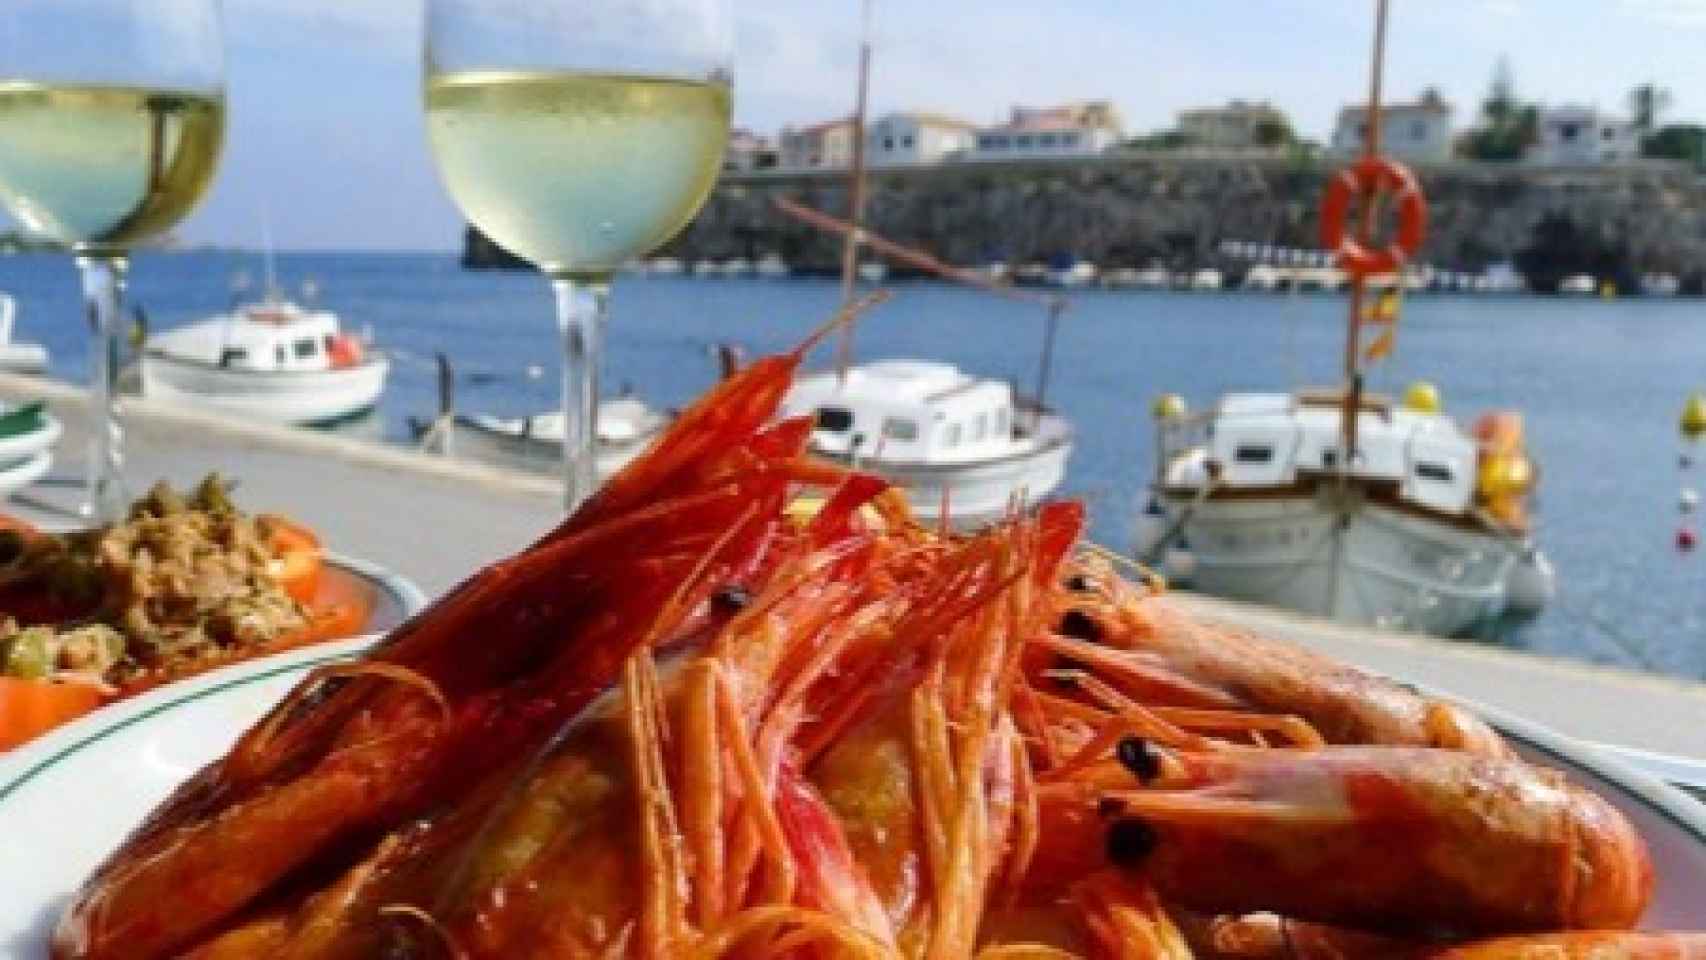 Lo mejor de la costa menorquina en la mesa, mientras contemplas uno de los puertos más encantadores de Menorca.  Así es el Trébol.